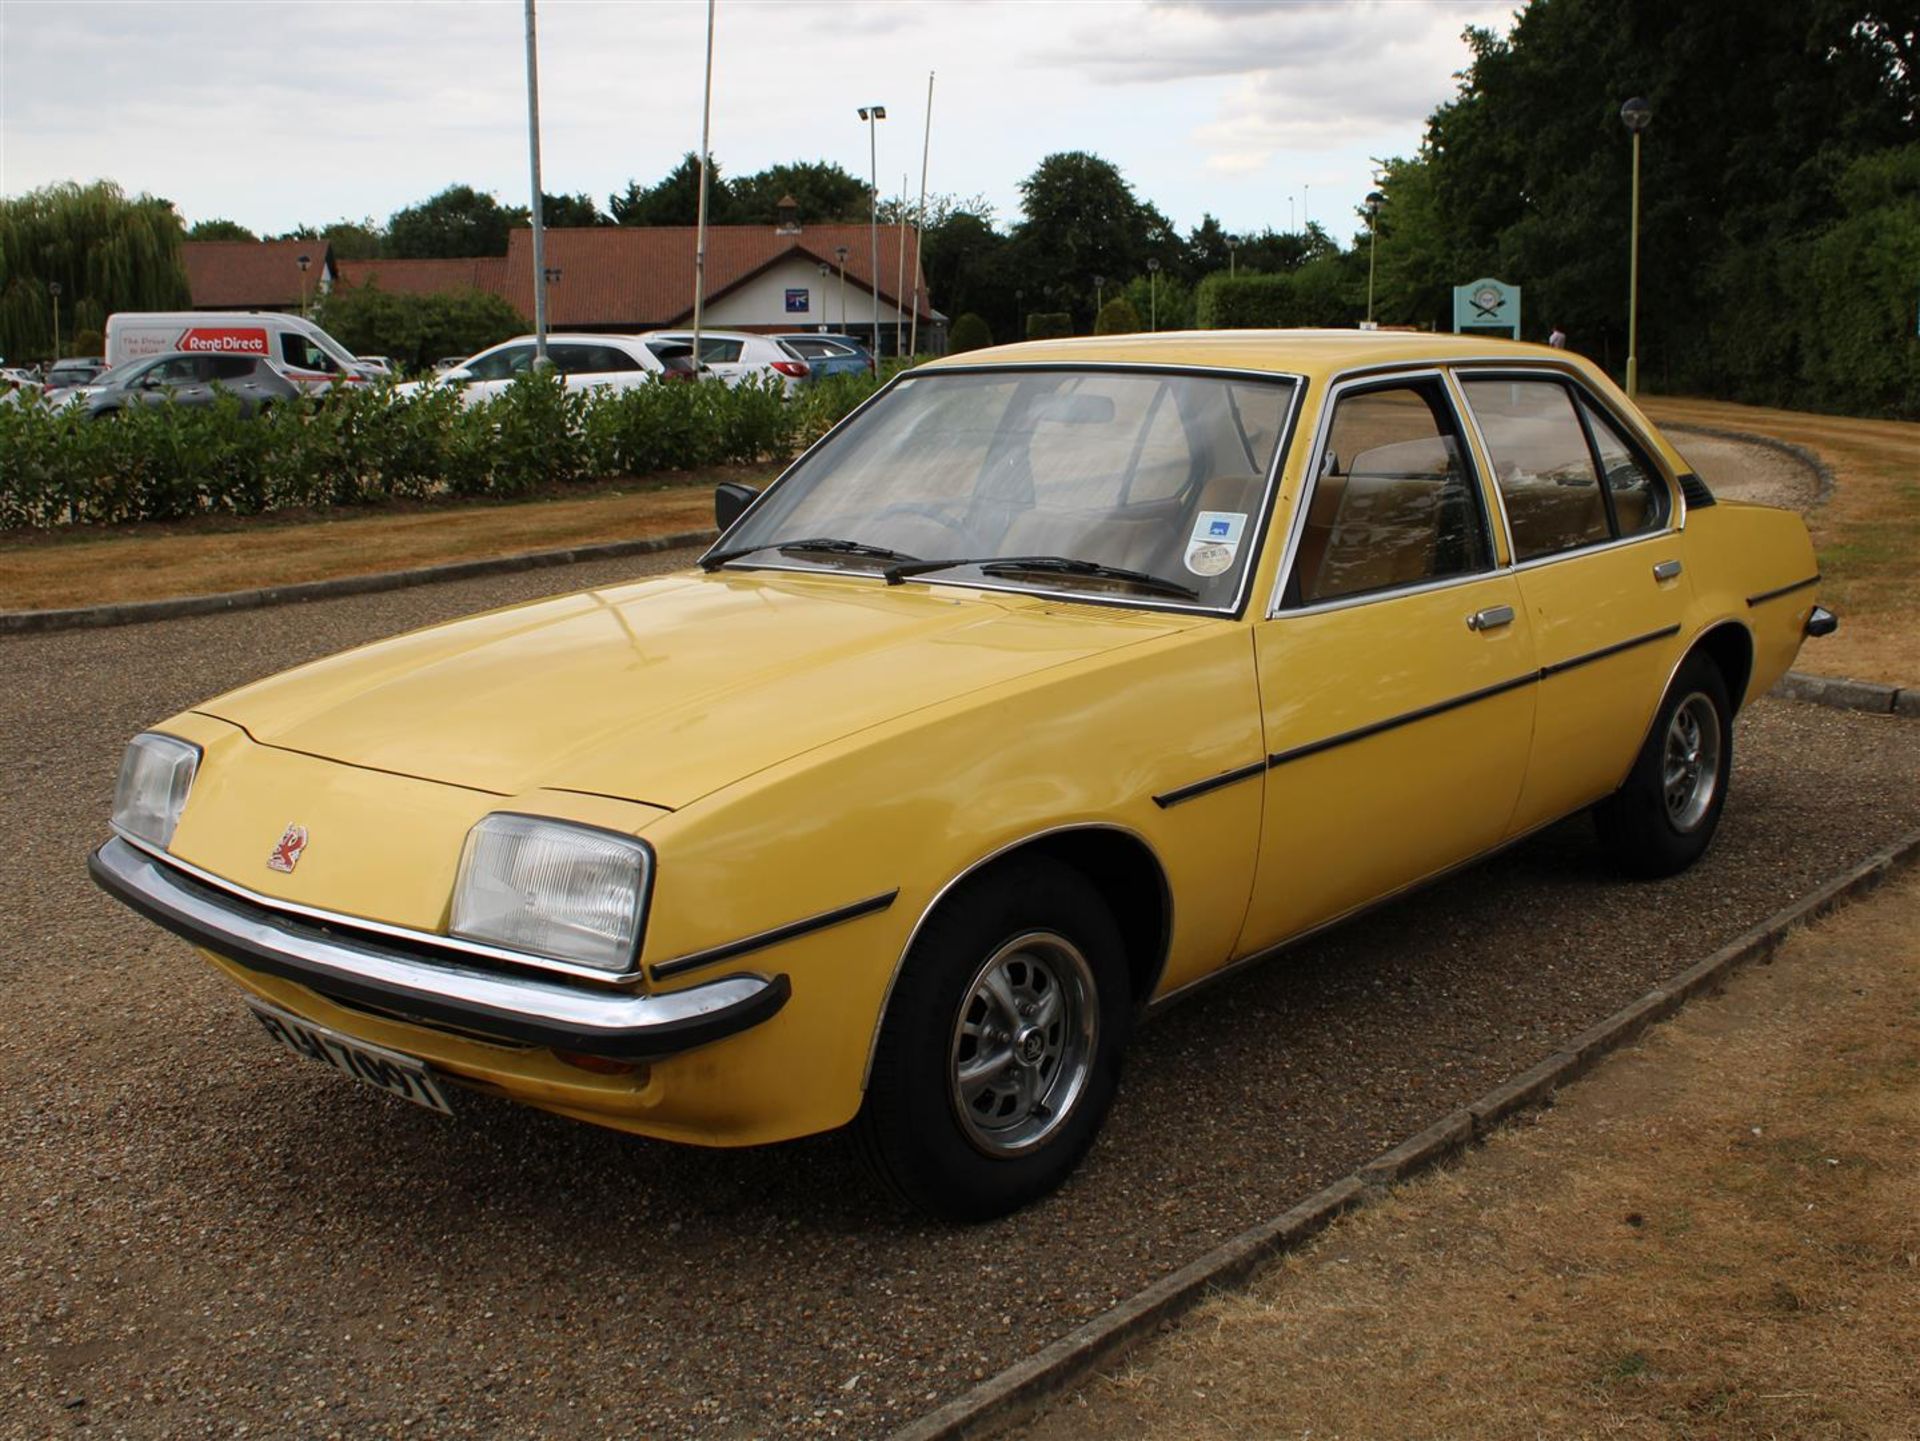 1979 Vauxhall Cavalier GL - Image 3 of 33